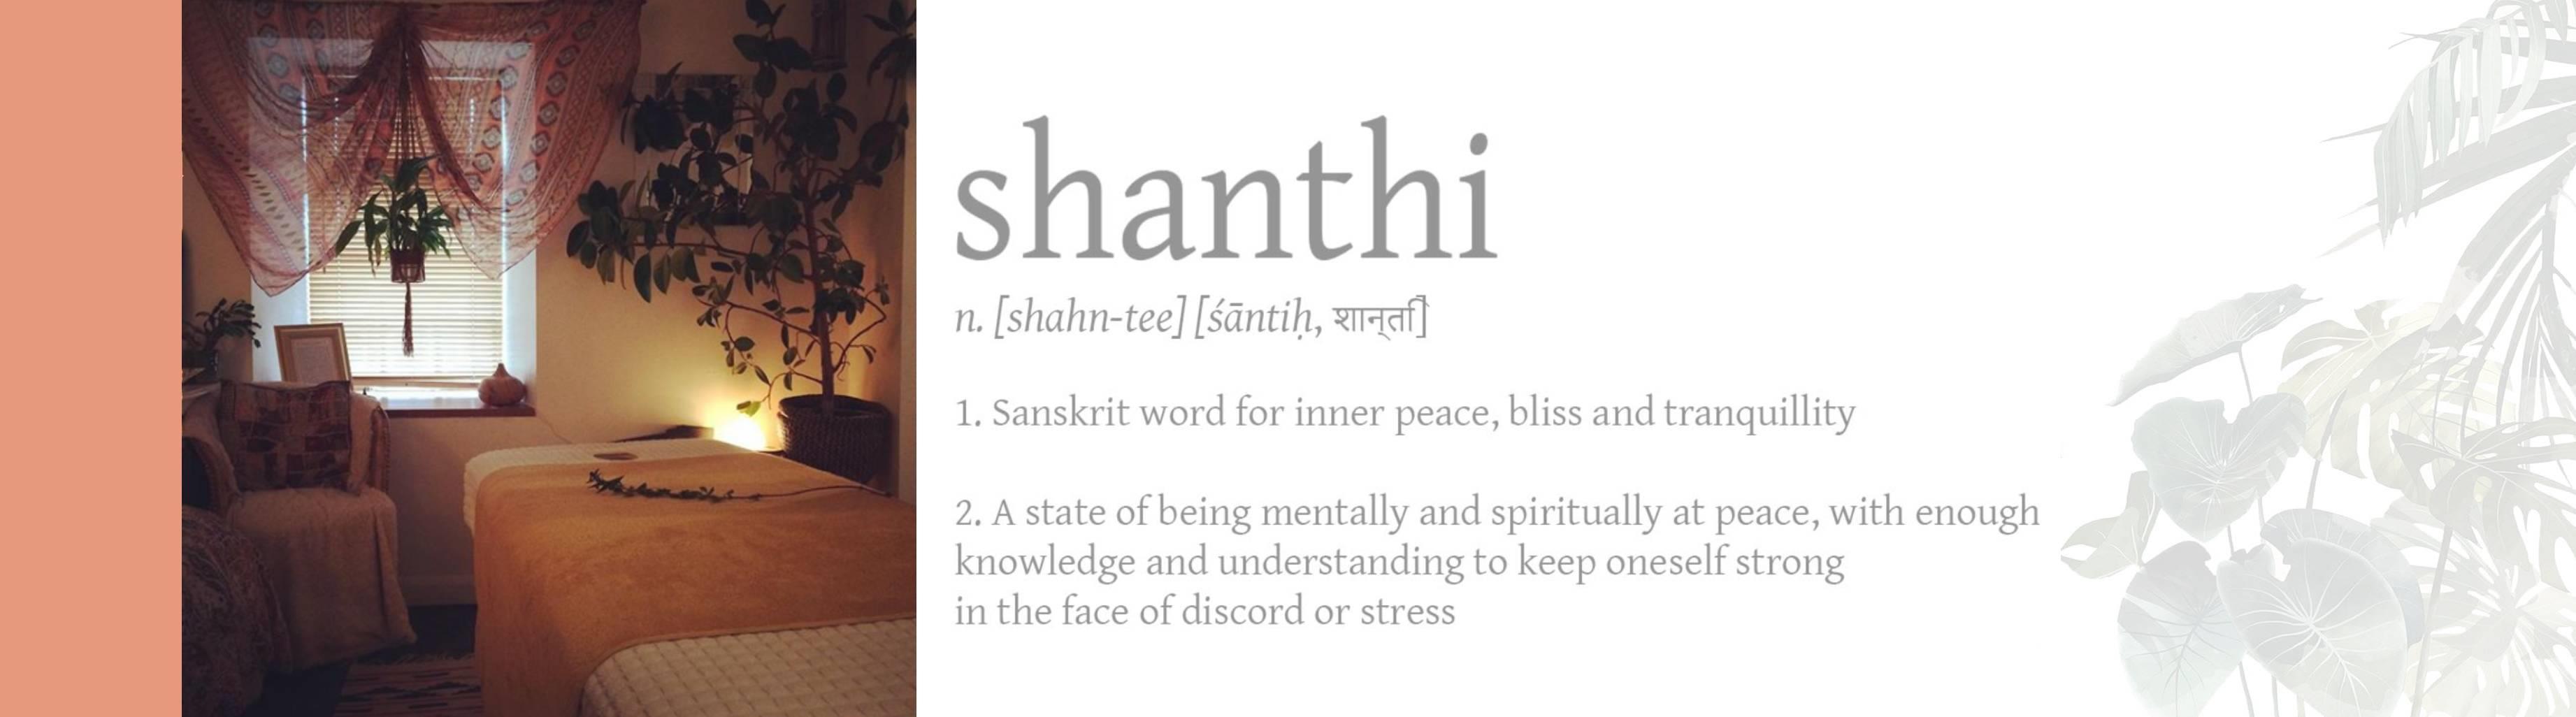 shanthi . massage